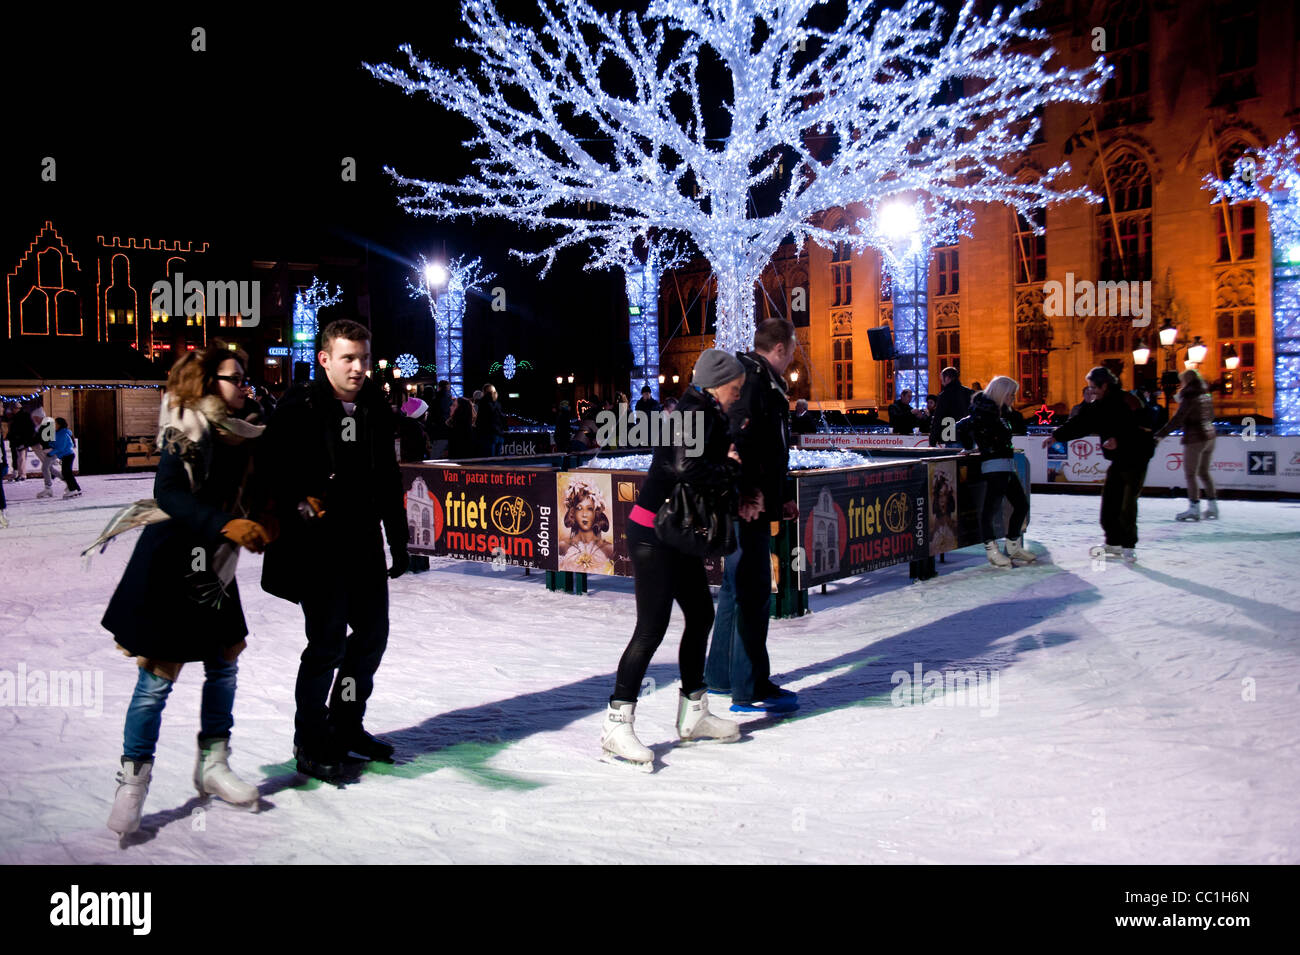 Skater auf Outdoor-Eisbahn im Weihnachtsmarkt Quadrat Brügge Belgien Stockfoto